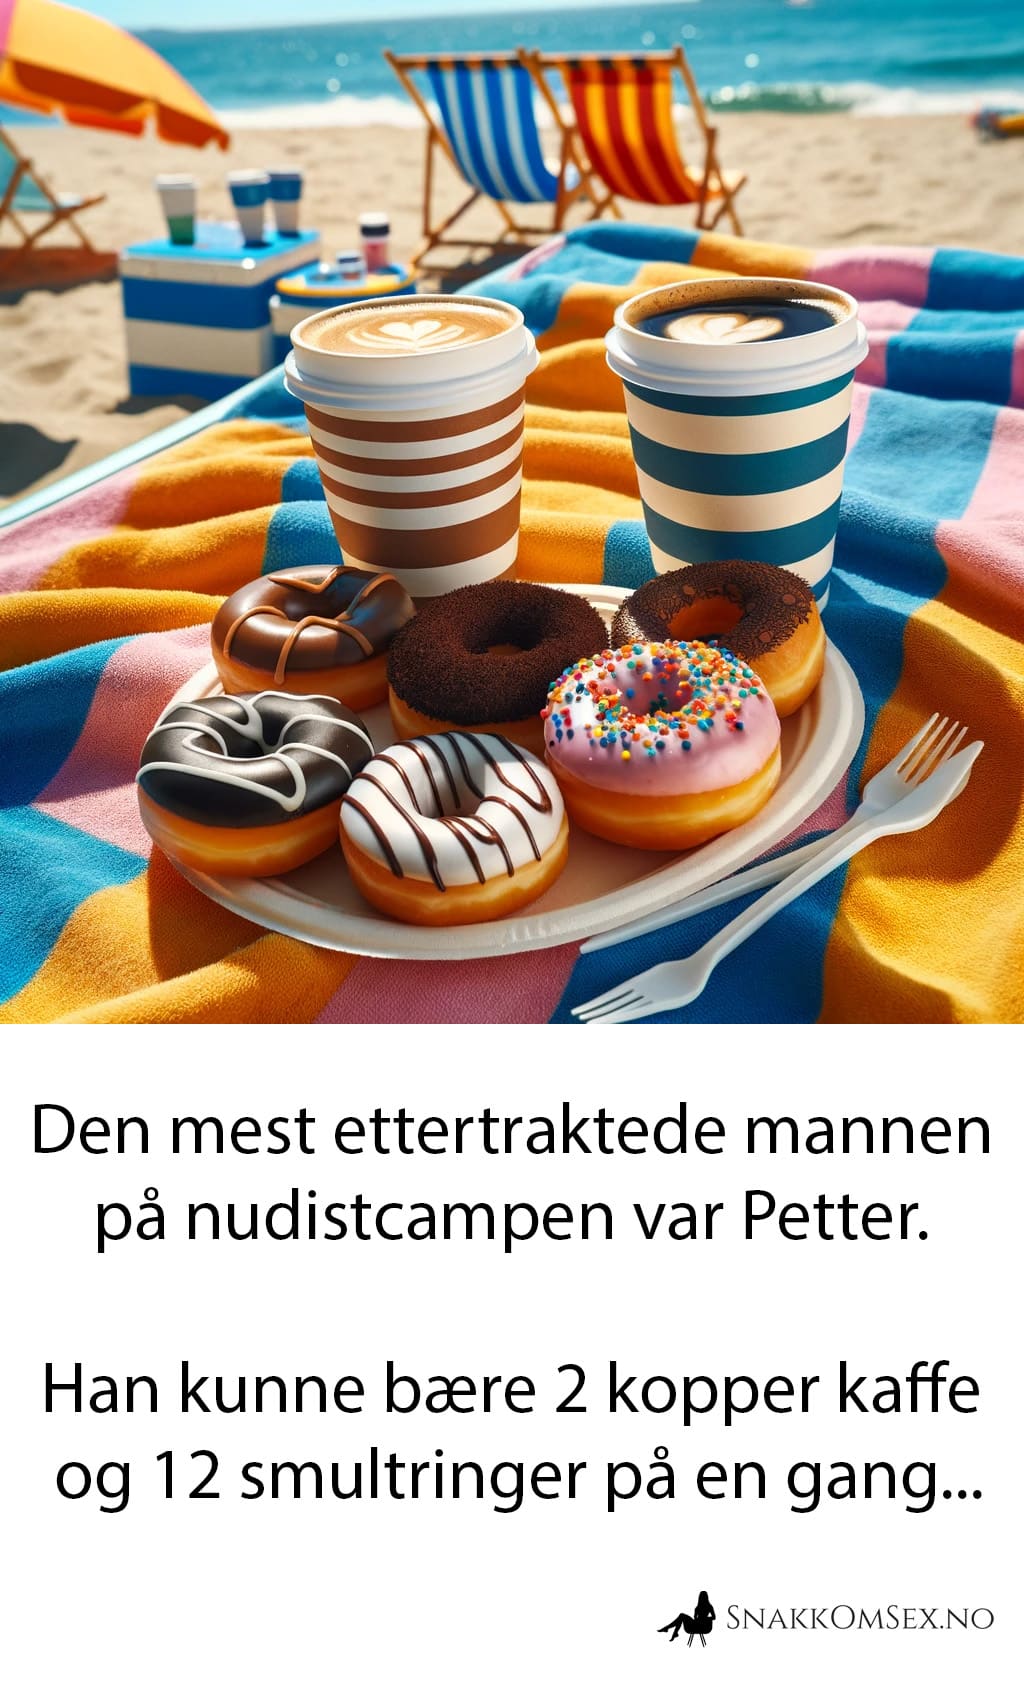 Den mest ettertraktede mannen på nudistcampen var Petter. Han kunne servere to kopper kaffe og et dusin smultringer på en gang. Bilde av smultringer og kaffe